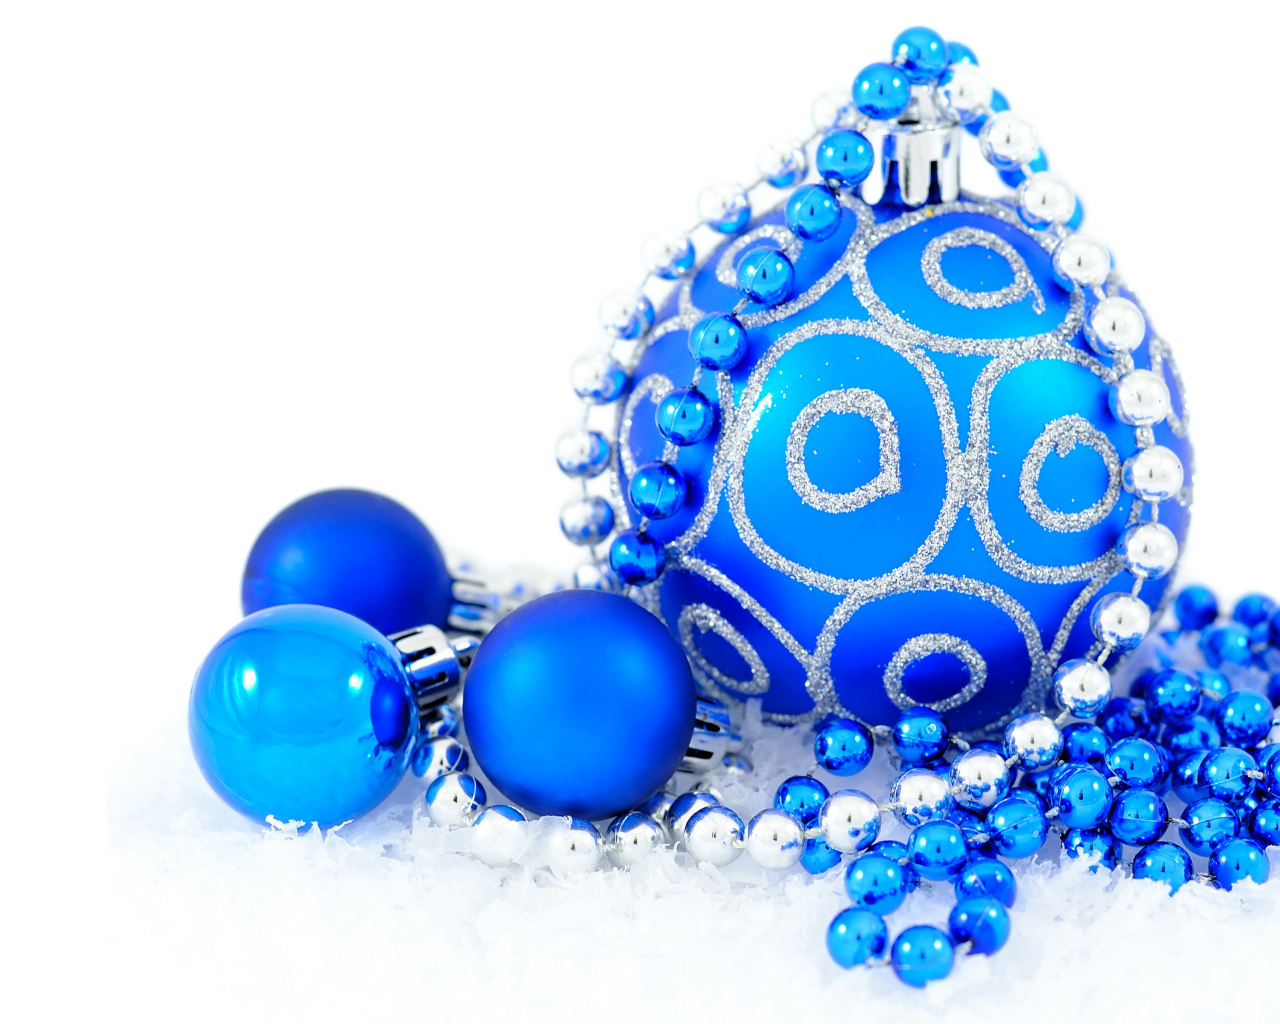 Голубые блестящие шарики с бусами на белом фоне на Новый год 